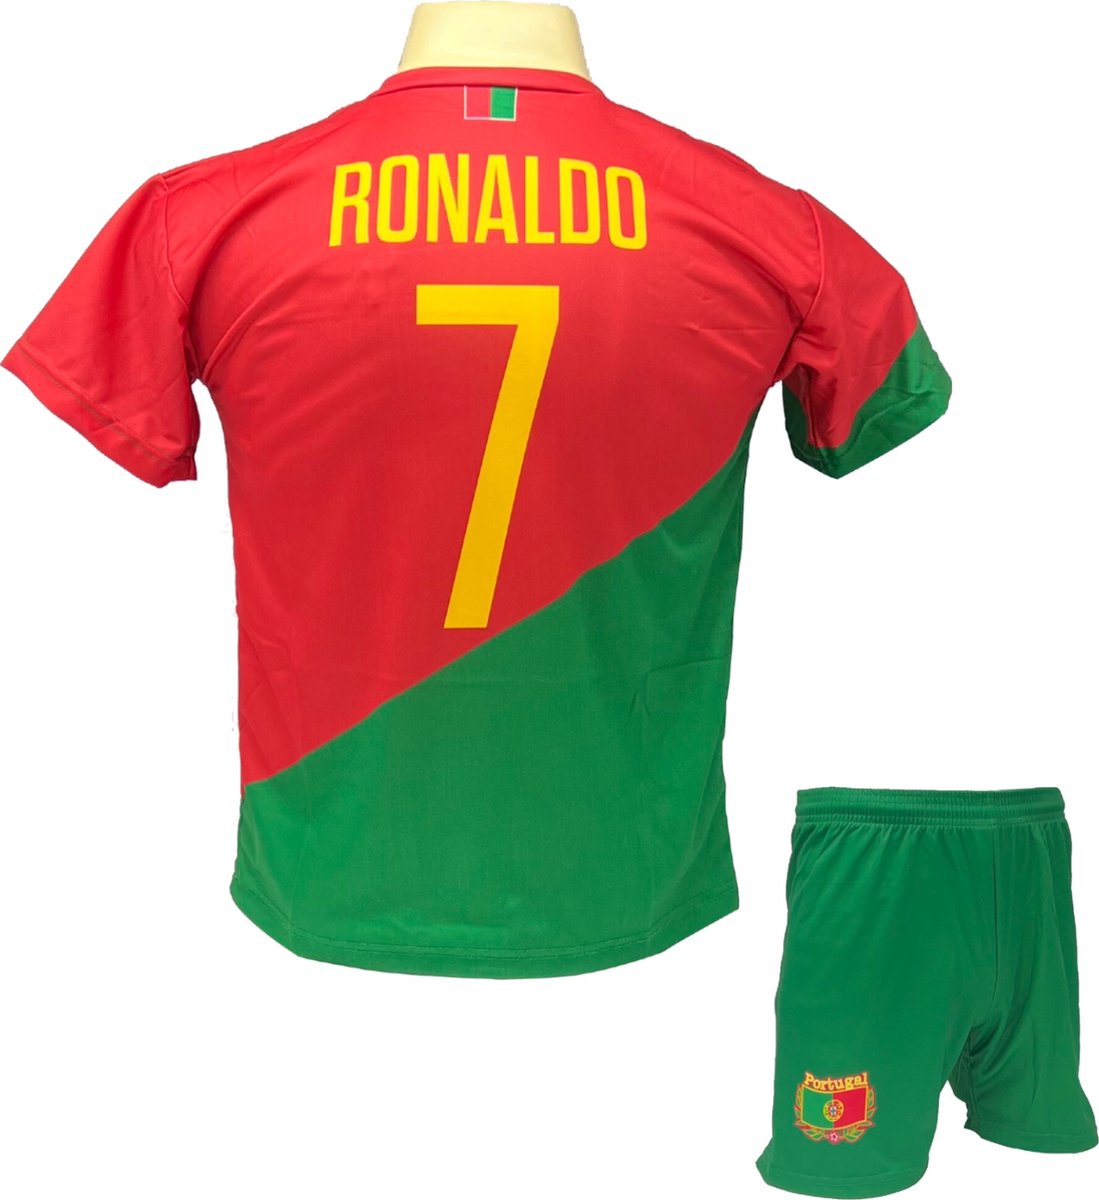 Cristiano Ronaldo CR7 Portugal Tenue - Voetbal Shirt + broekje set - EK/WK voetbaltenue - Maat 128 - Rood